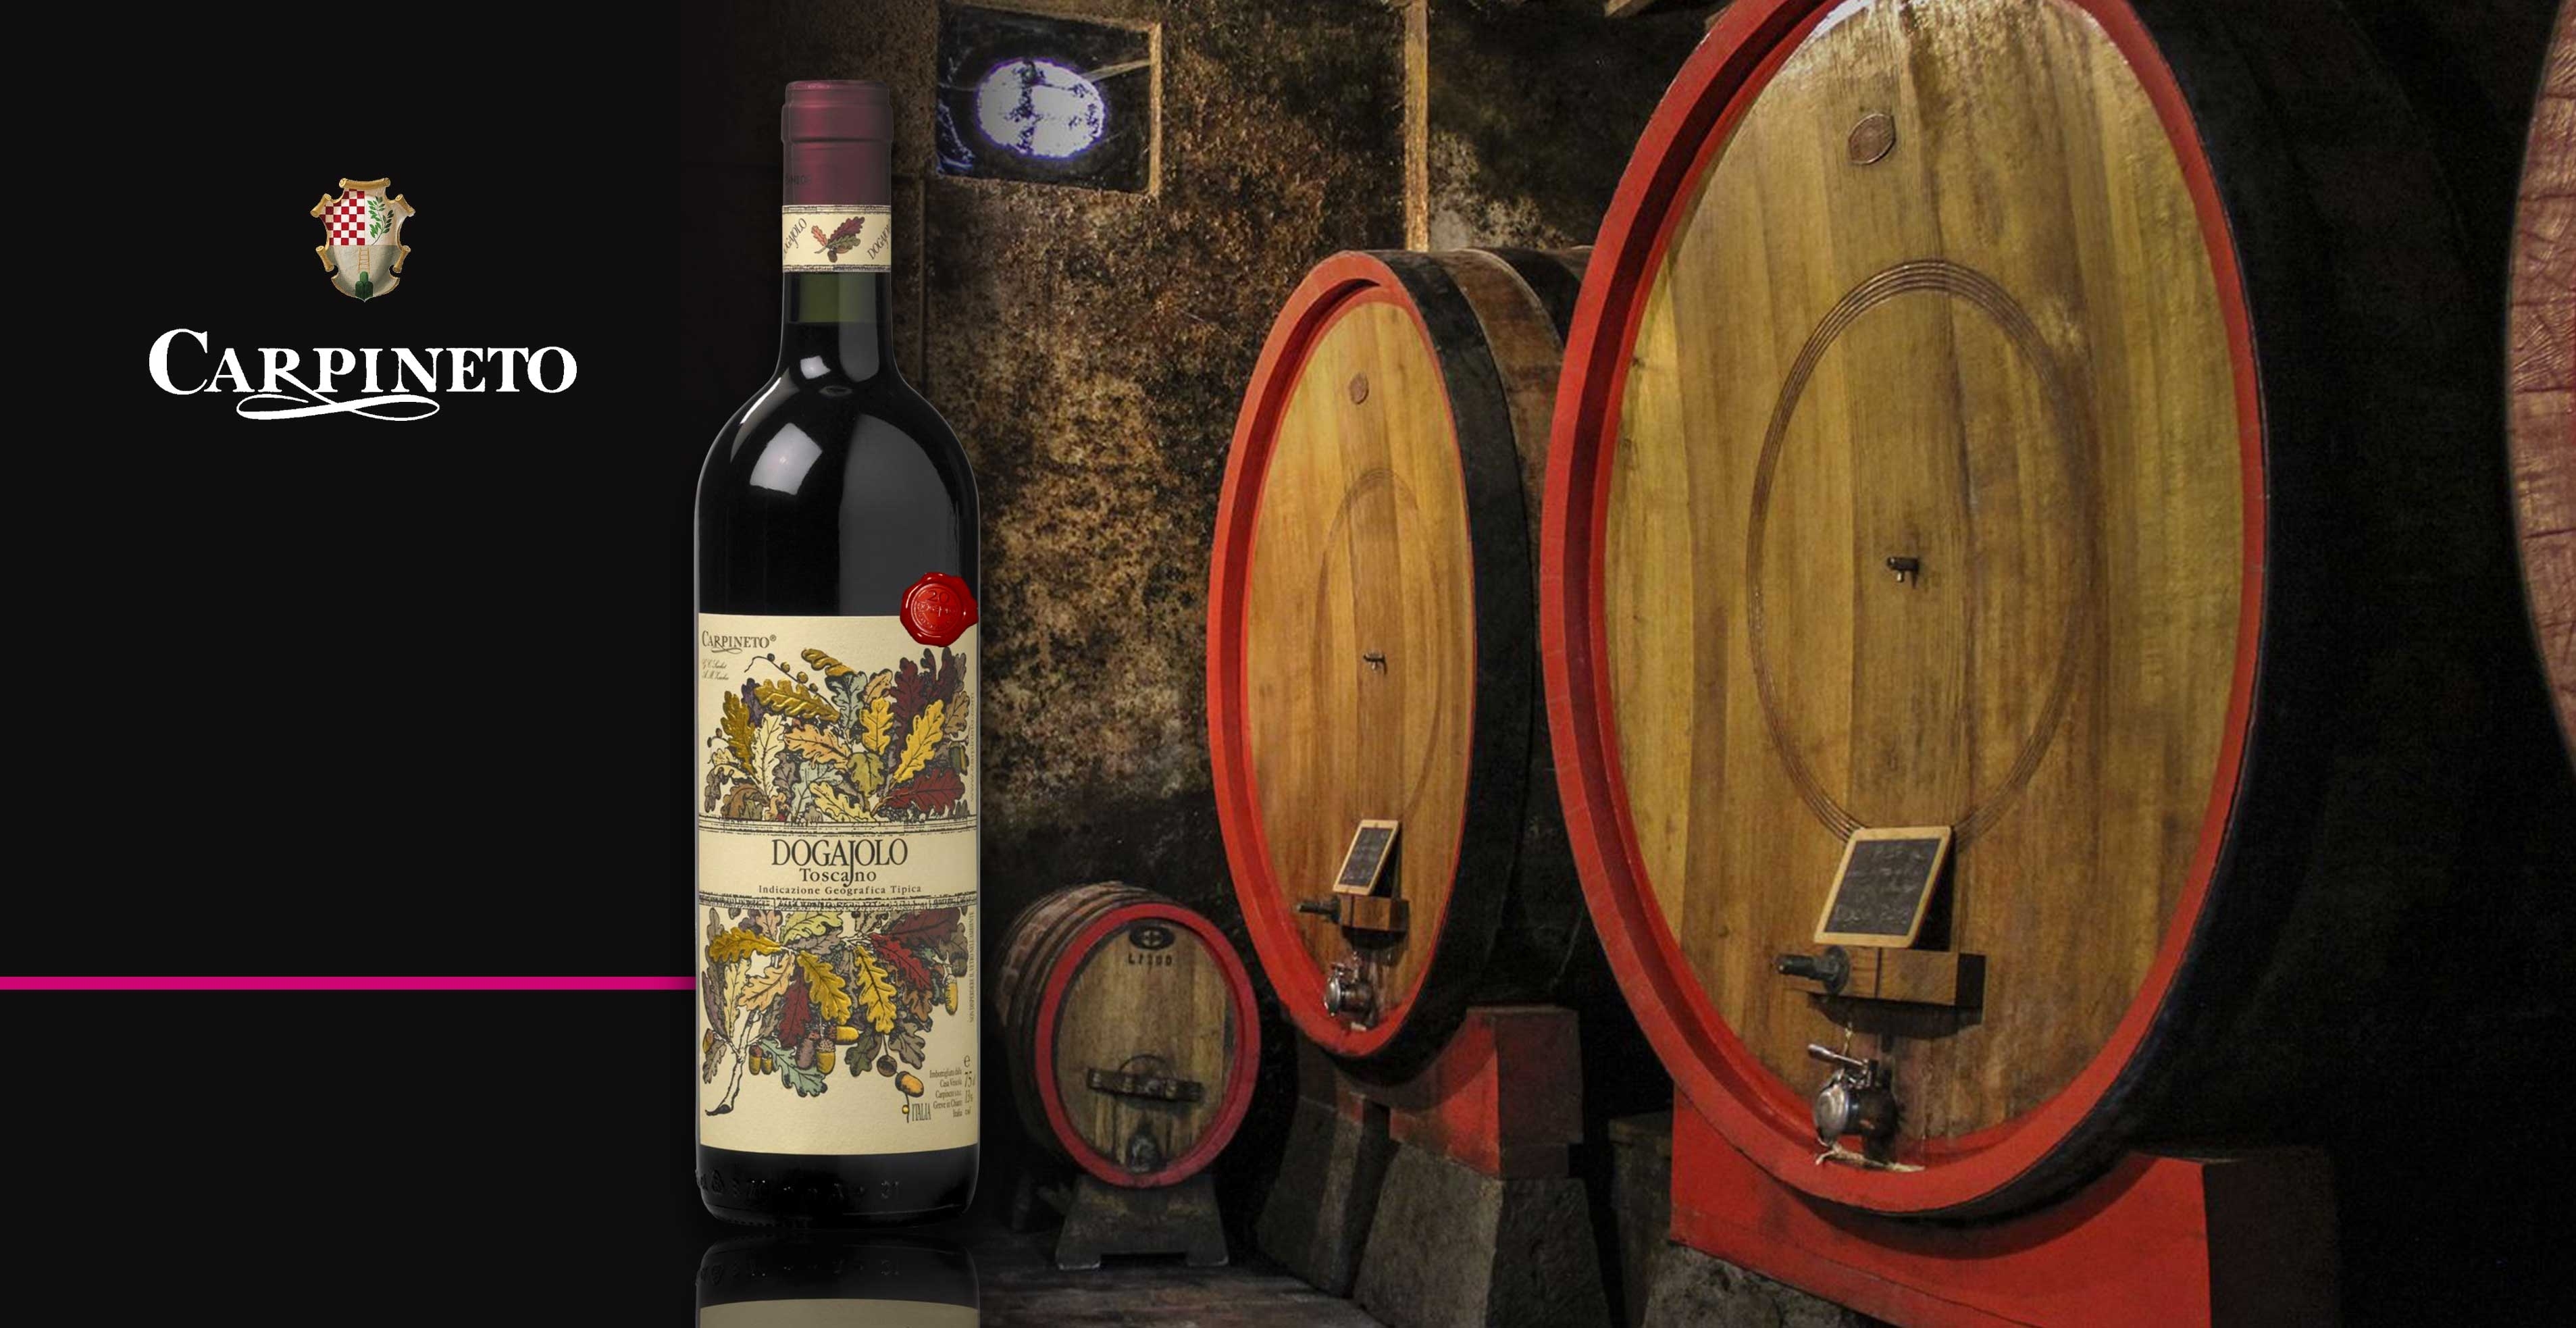 Rode wijn - Carpineto - Dogajolo